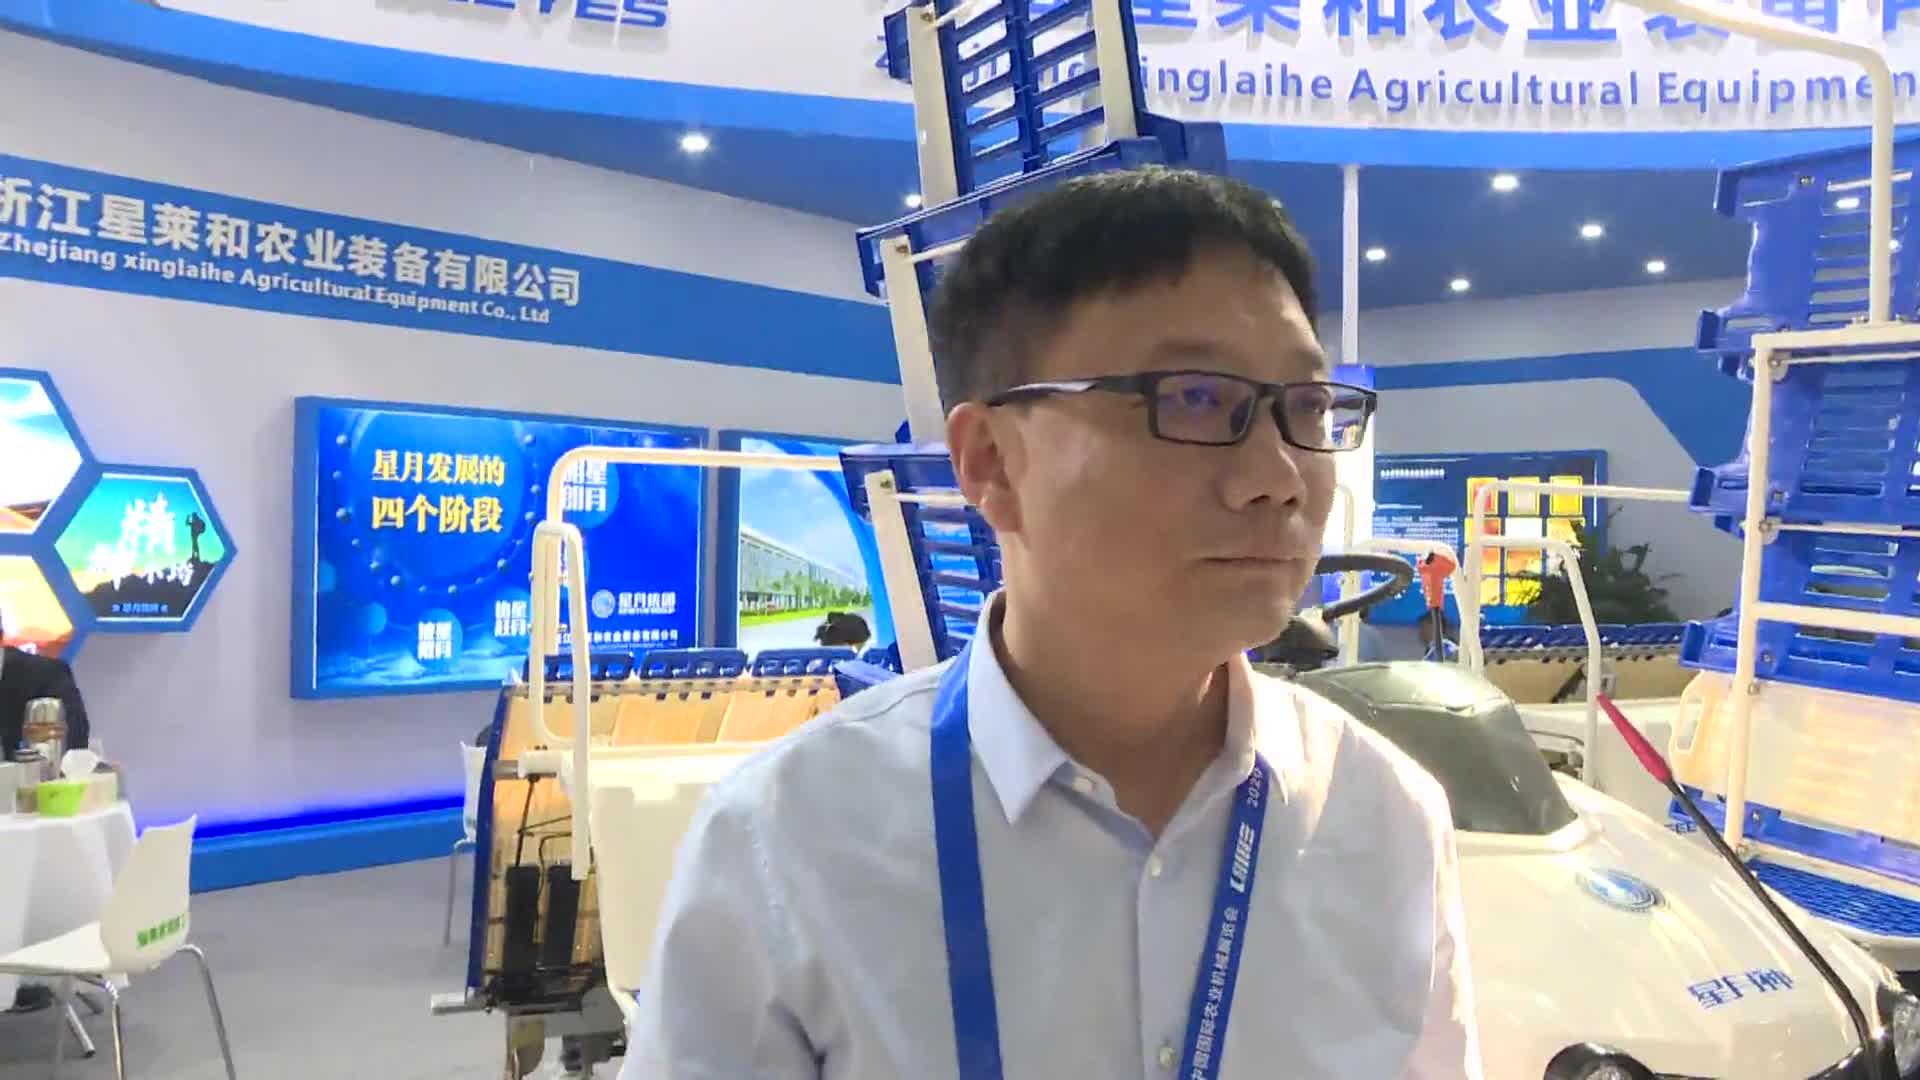 【2020年全国农机展】农机360网专访浙江星莱和农业装备有限公司 李波军总经理